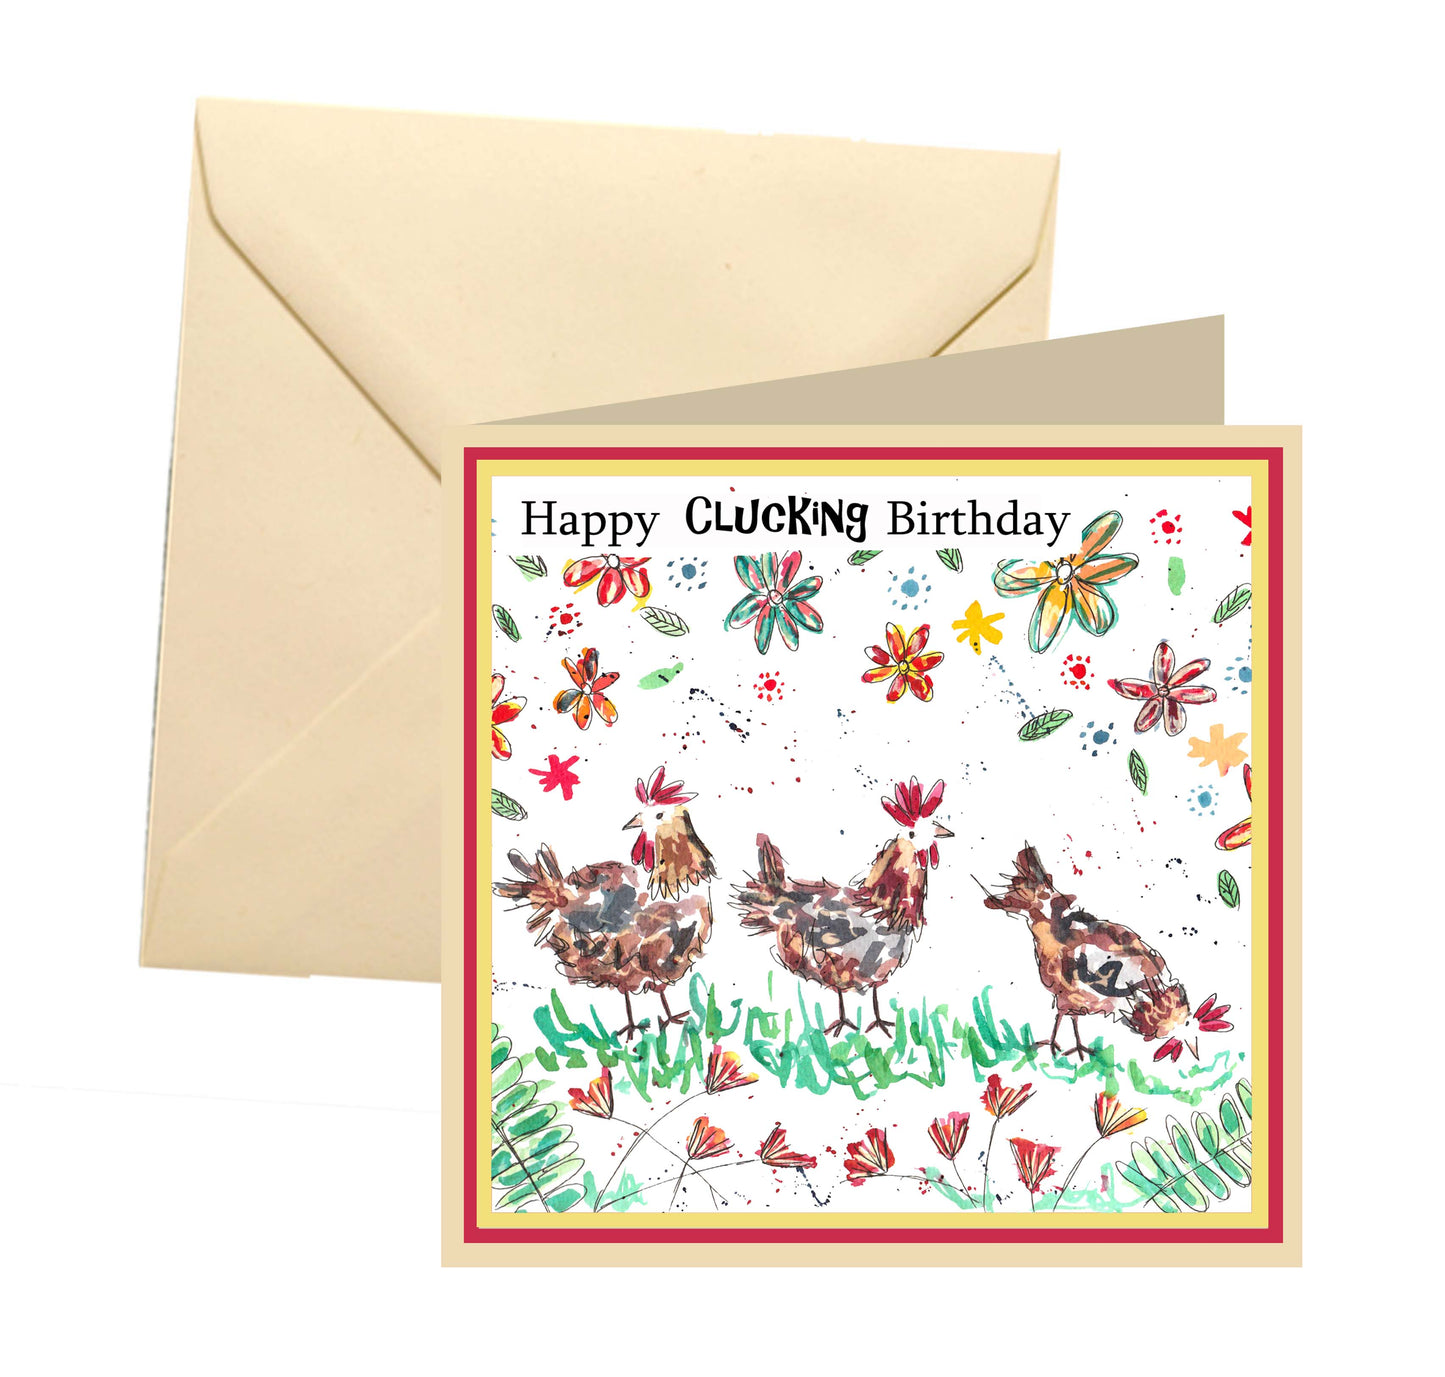 Happy clucking birthday- chicken/hen birthday card